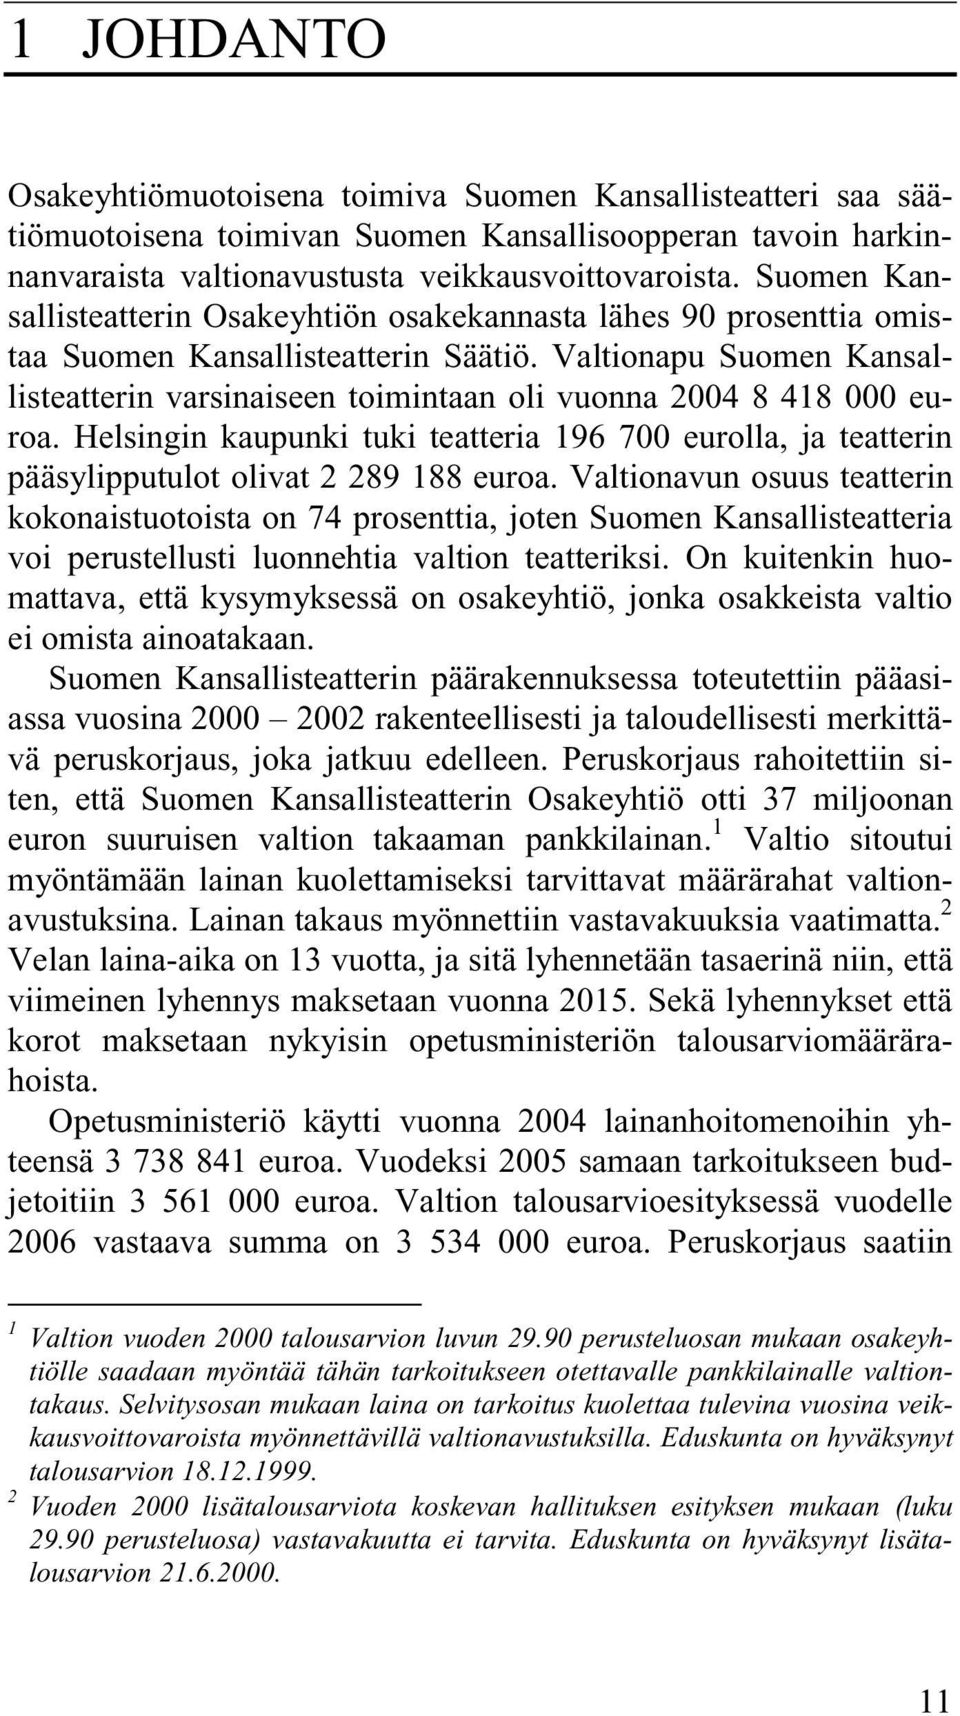 Valtionapu Suomen Kansallisteatterin varsinaiseen toimintaan oli vuonna 2004 8 418 000 euroa. Helsingin kaupunki tuki teatteria 196 700 eurolla, ja teatterin pääsylipputulot olivat 2 289 188 euroa.